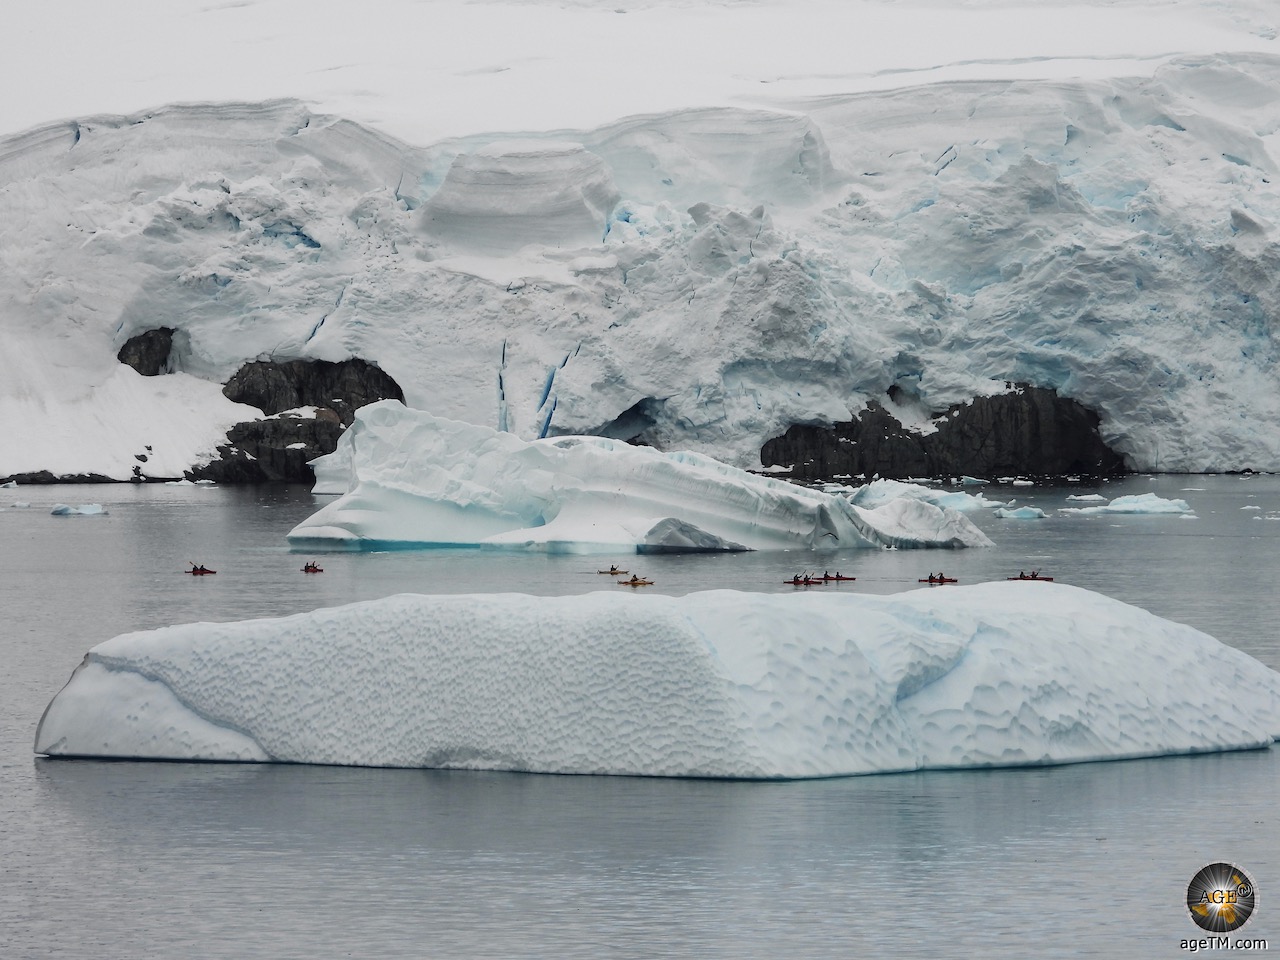 Isang grupo ng mga kayaker ang sumasagwan sa pagitan ng dalawang higanteng iceberg at mula sa maniyebe na baybayin ng Portal Point sa Antarctic Peninsula